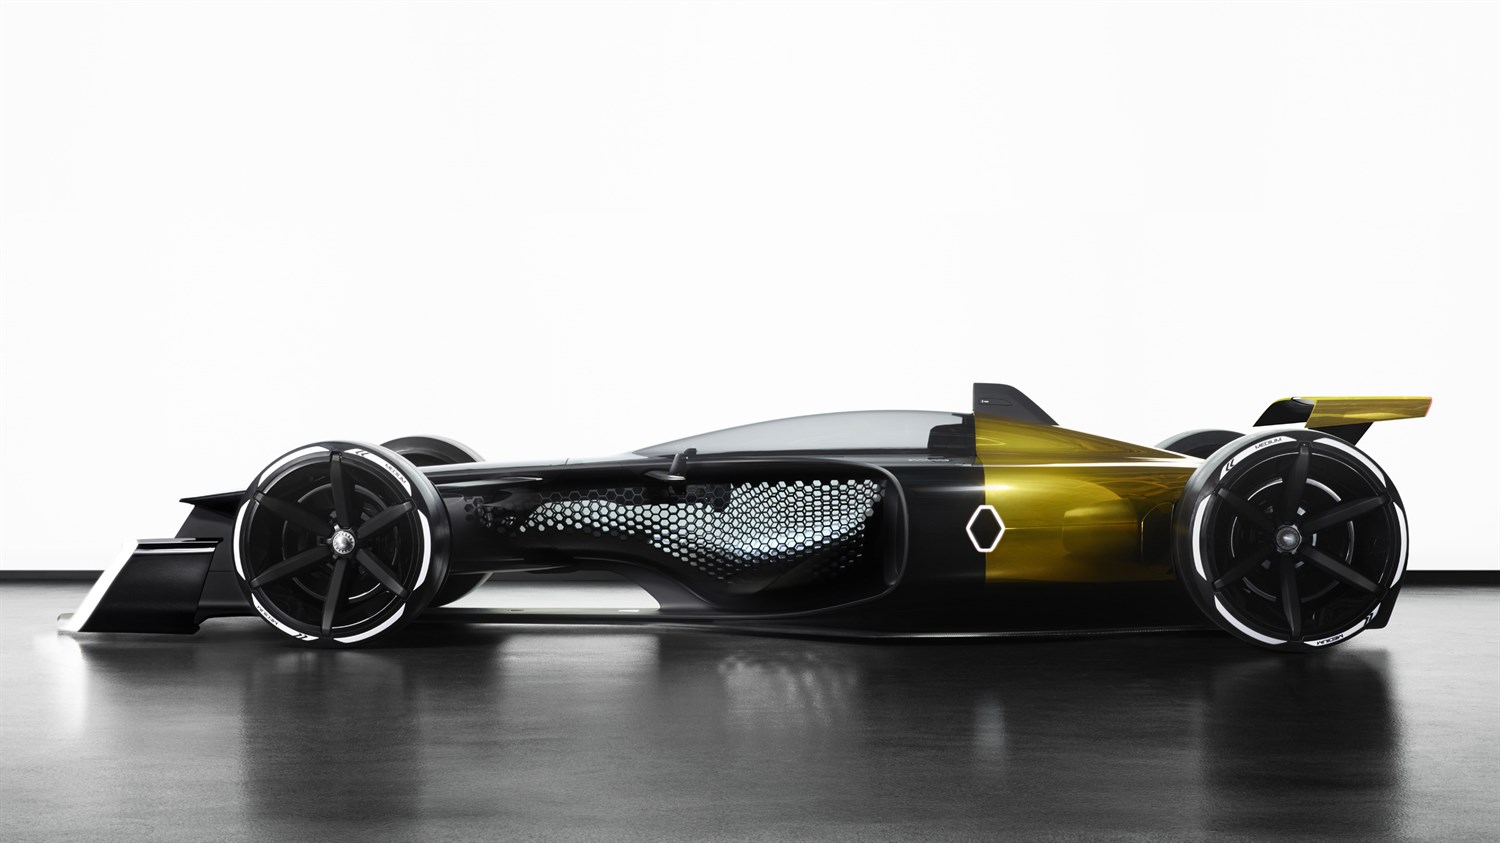 Renault Concept-car - R.S. 2027 Vision Concept de profil